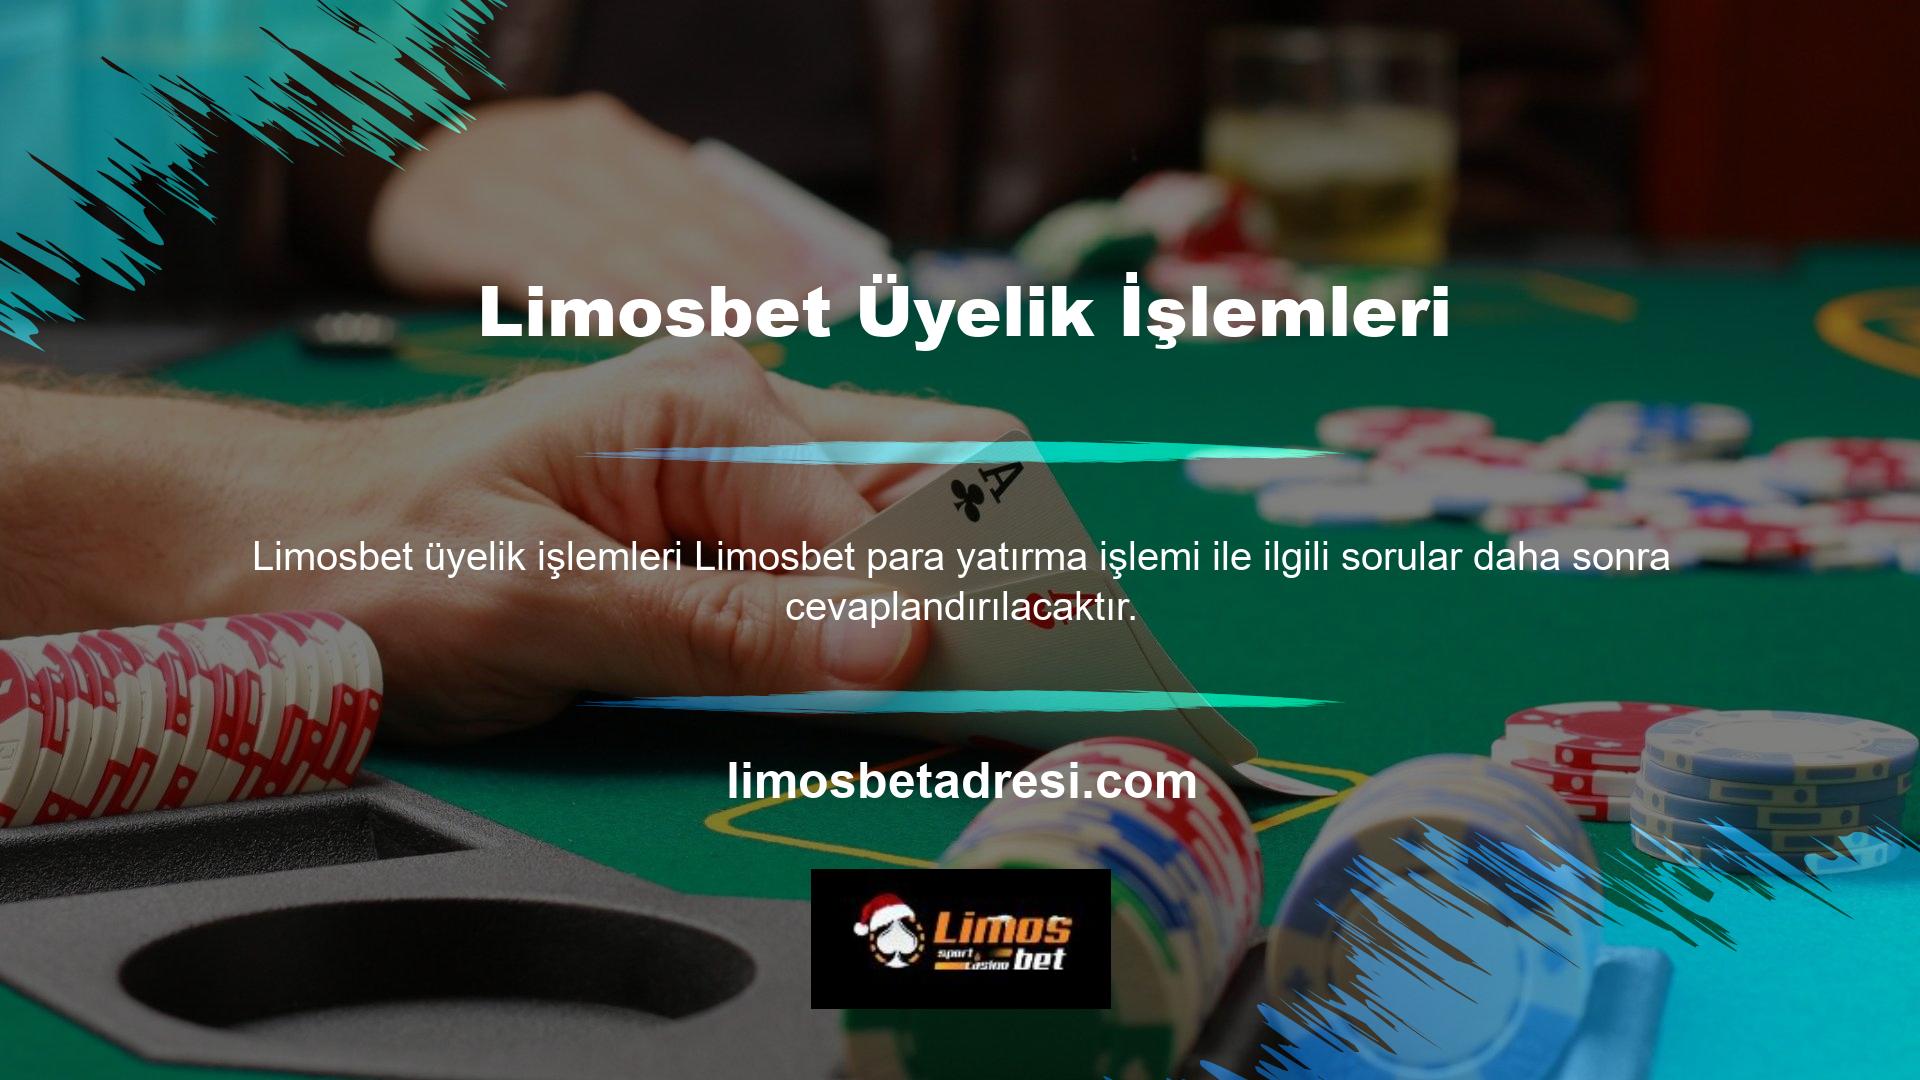 Limosbet üyenizin para yatırma işlemlerini bahis oynamak istediğiniz kişiye kolaylıkla aktarabilir veya canlı bahis ofisimizin casino hizmetlerinden yararlanabilirsiniz